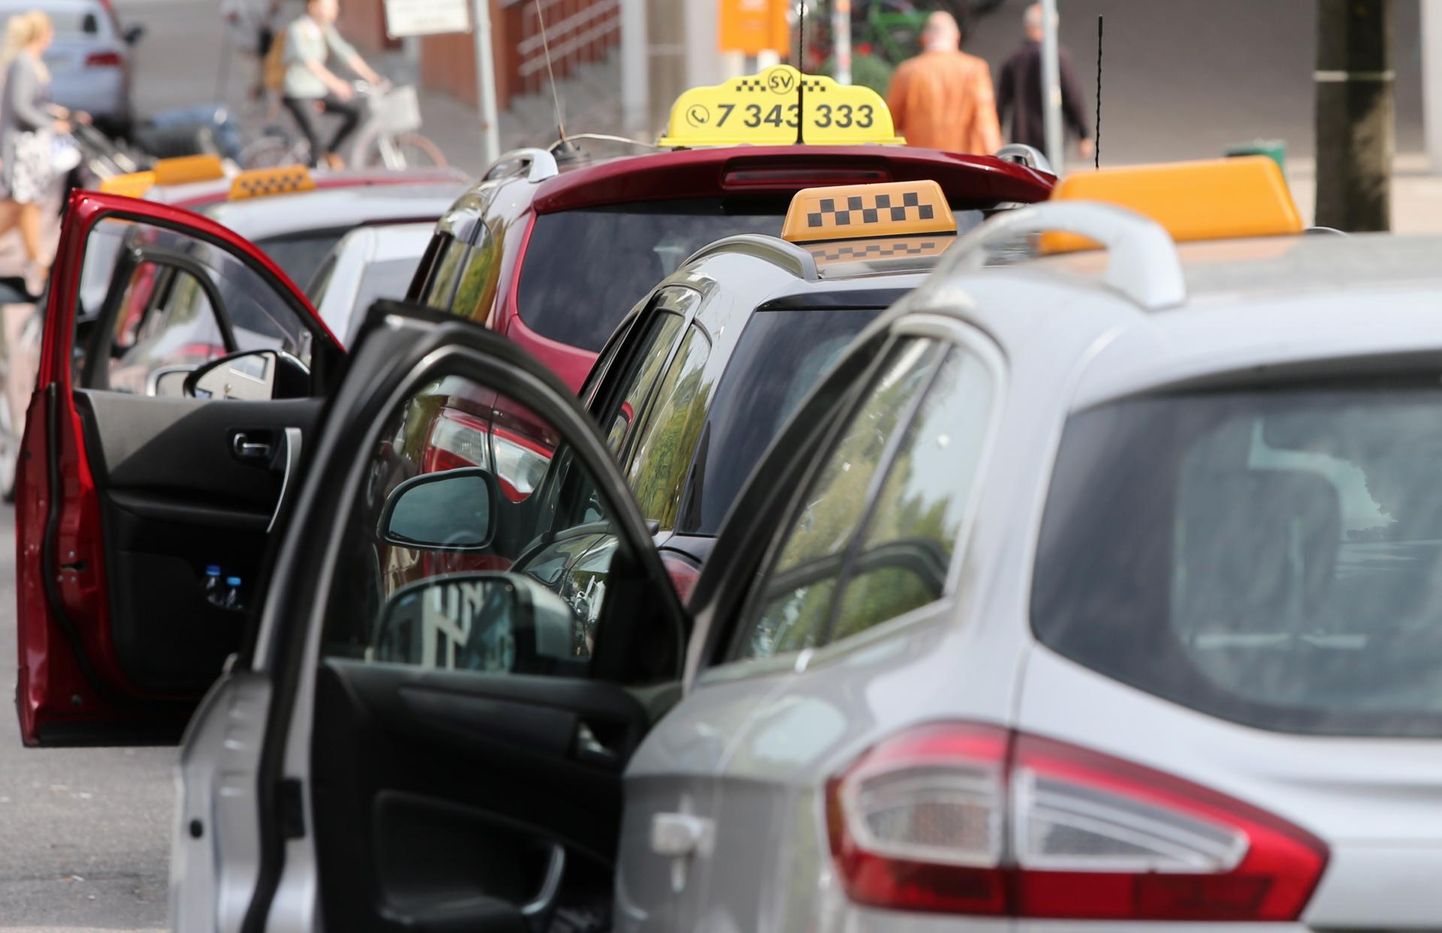 Tartu taksojuhte ärritab, et taksode kindlustusmakse on tavalisest sõiduautost kuni 800 protsenti suurem, kuigi seaduse järgi kuulub takso sarnaselt sõiduautoga M1 kategooriasse.